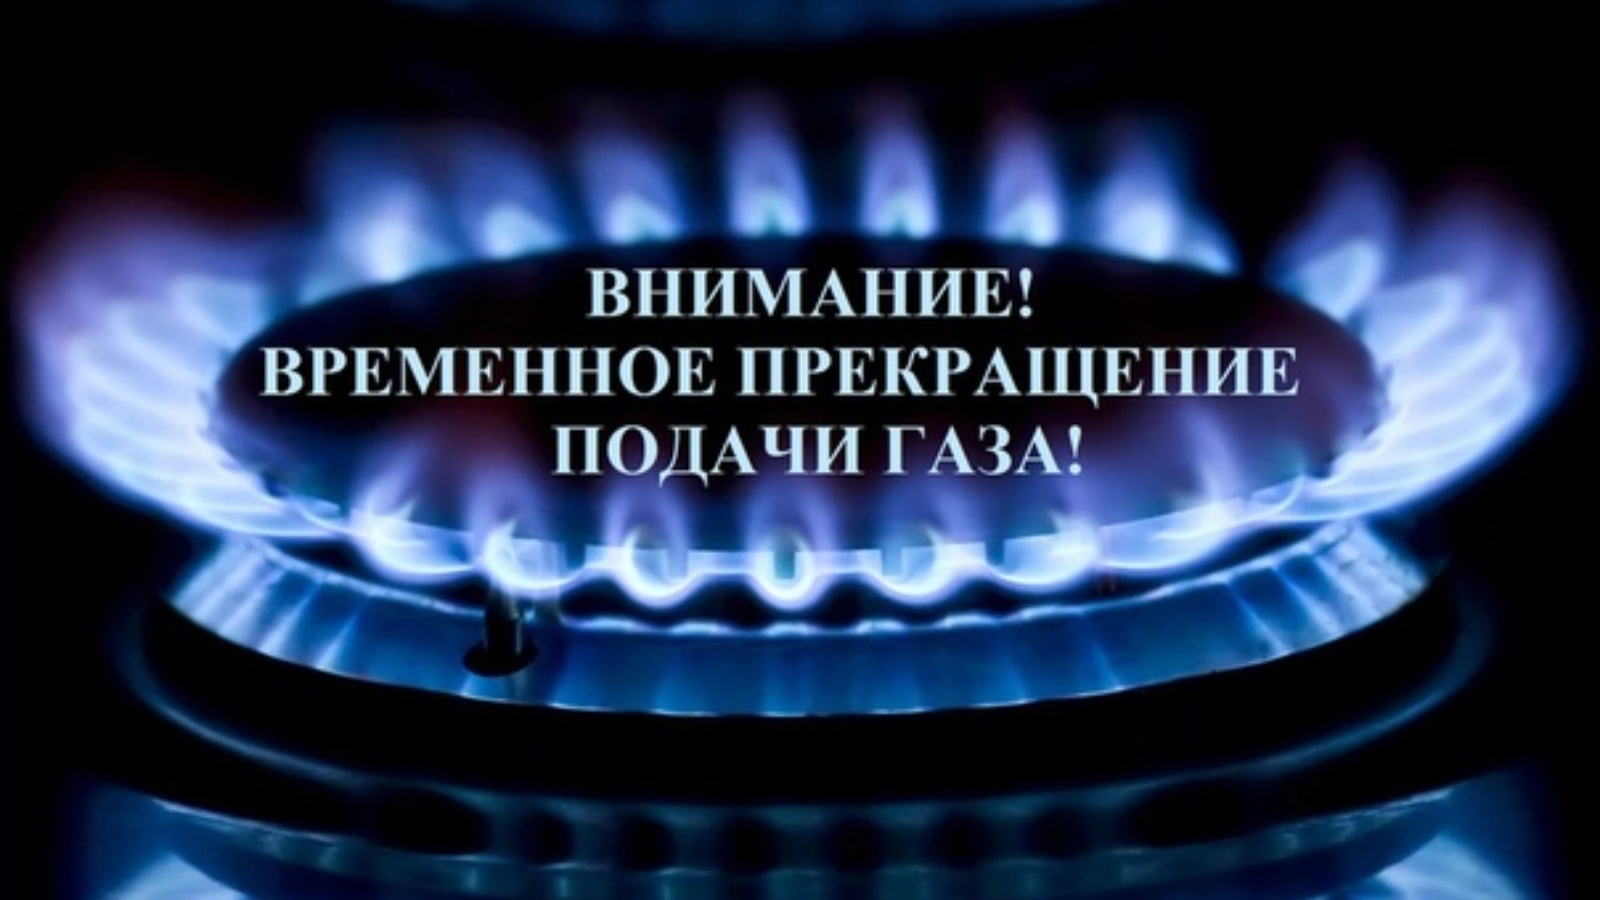 Внимание! Прекращение газоснабжения в ТУ Комьянское!.